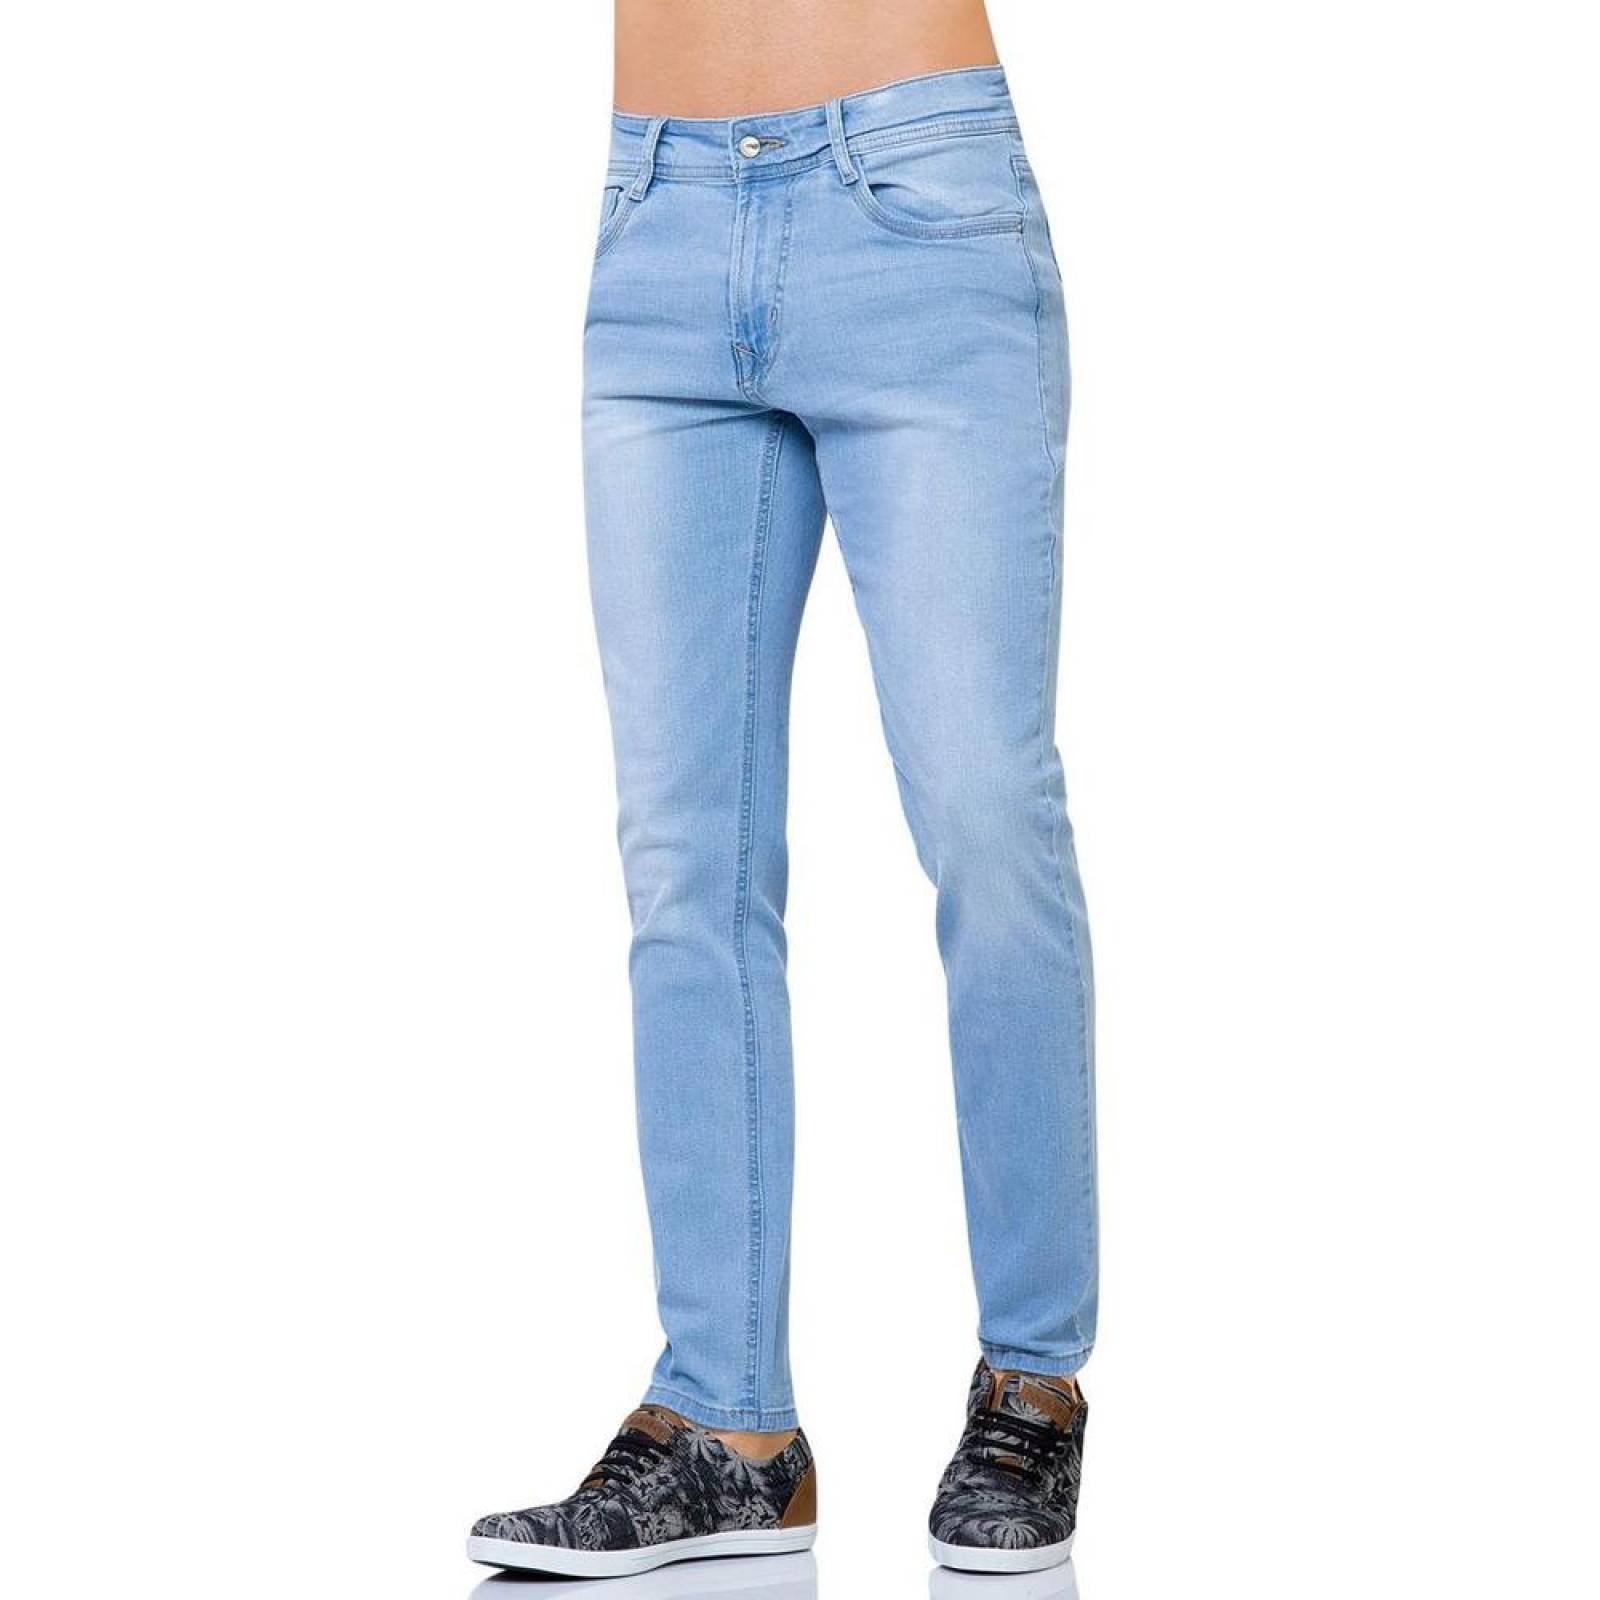 Jeans Básico Hombre Salvaje Tentación Bleach 71800181 Mezclilla Stretch 